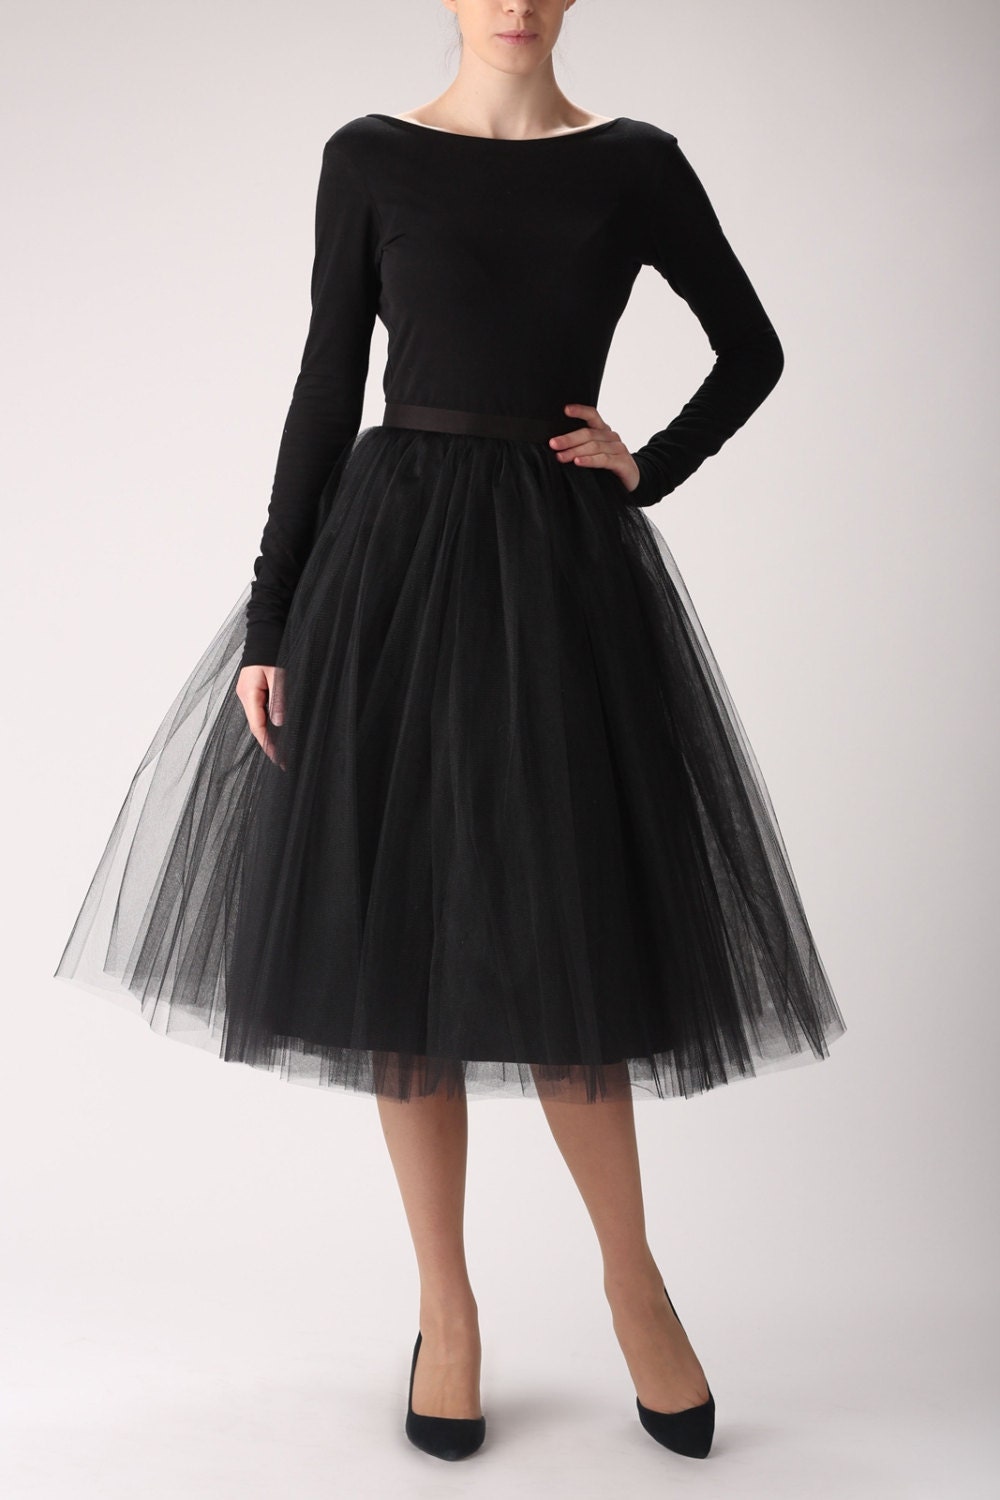 Black Tulle Skirt Handmade Long Skirt Handmade Tutu Skirt 0751